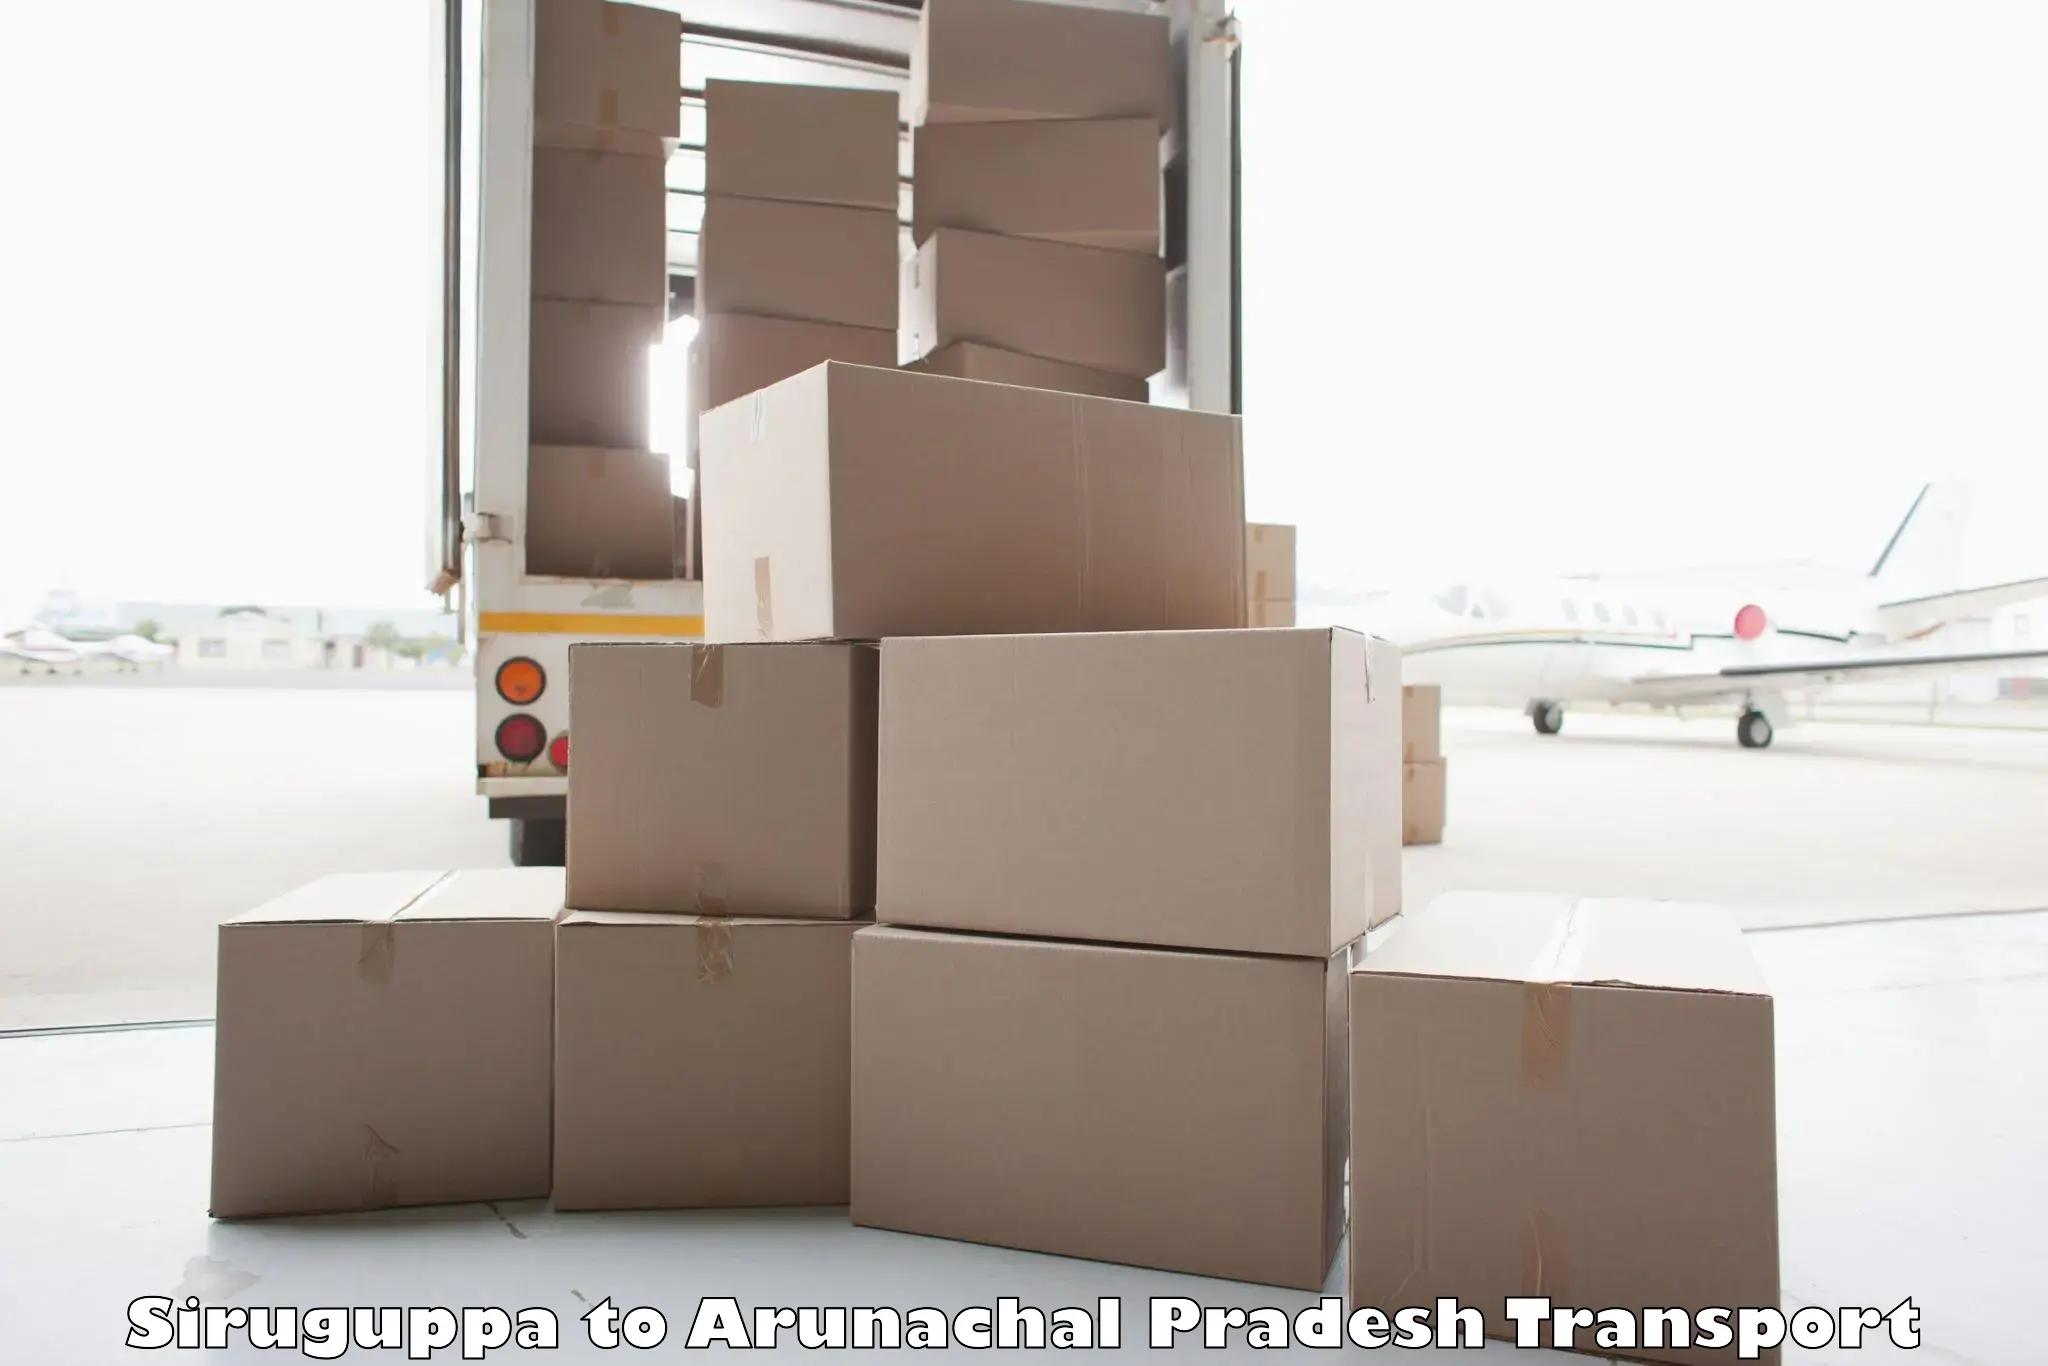 Parcel transport services Siruguppa to Arunachal Pradesh